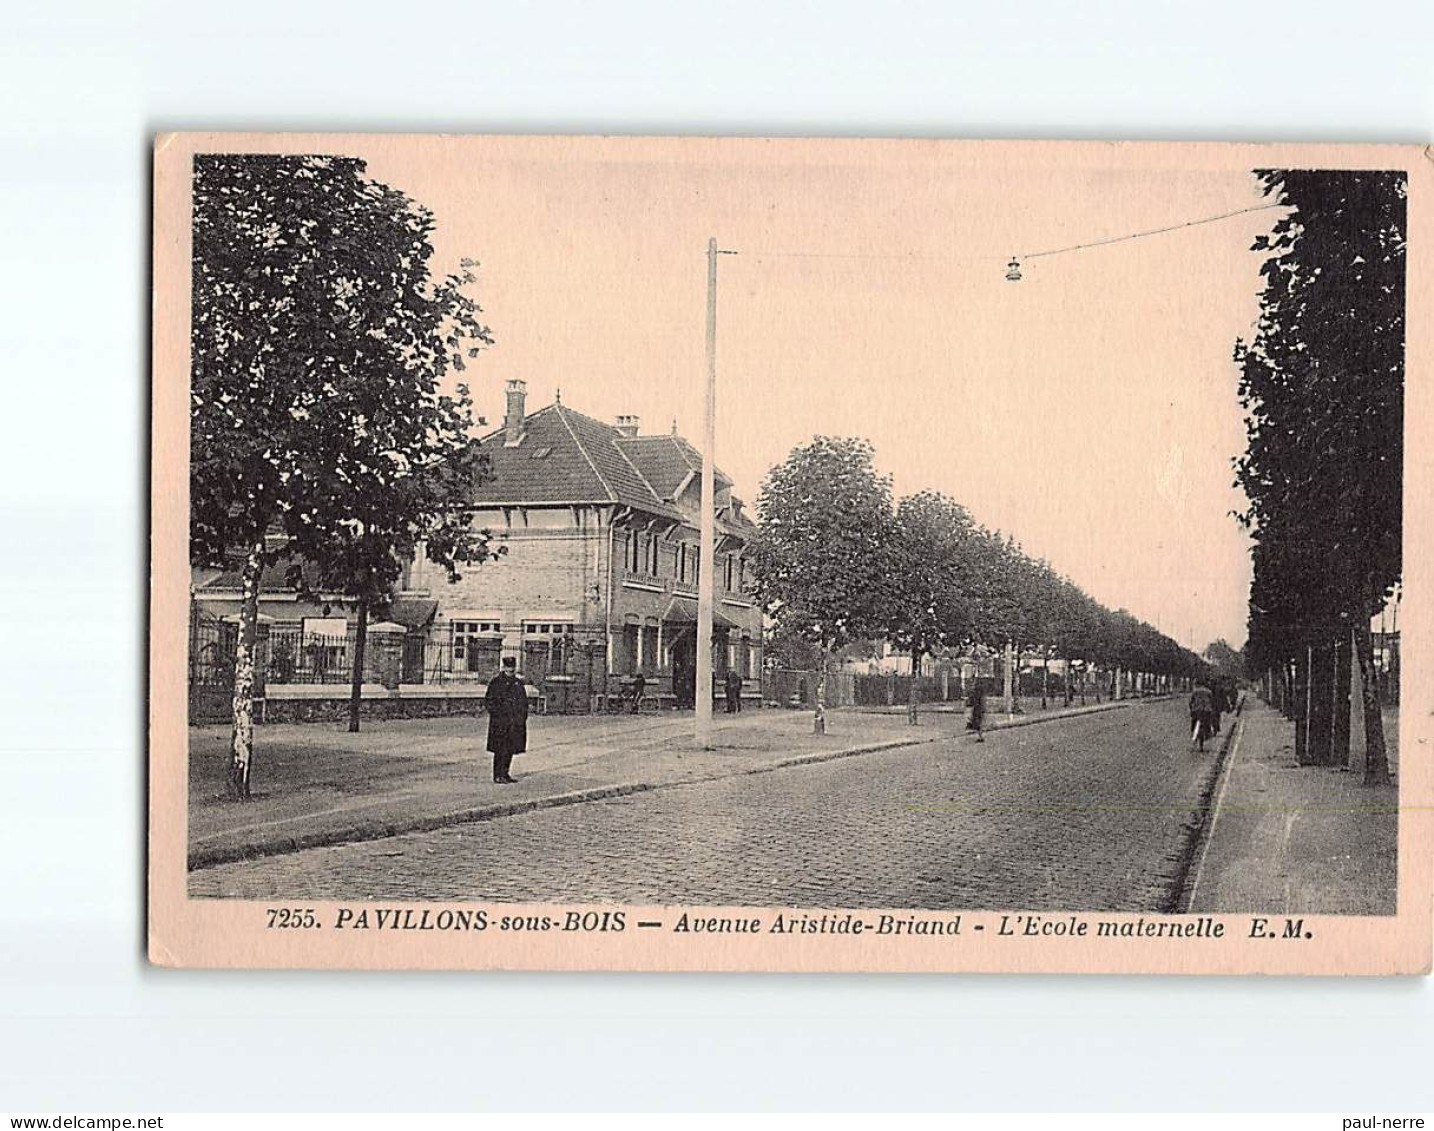 PAVILLON SOUS BOIS : Avenue Aristide Briand, L'Ecole Maternelle - état - Les Pavillons Sous Bois